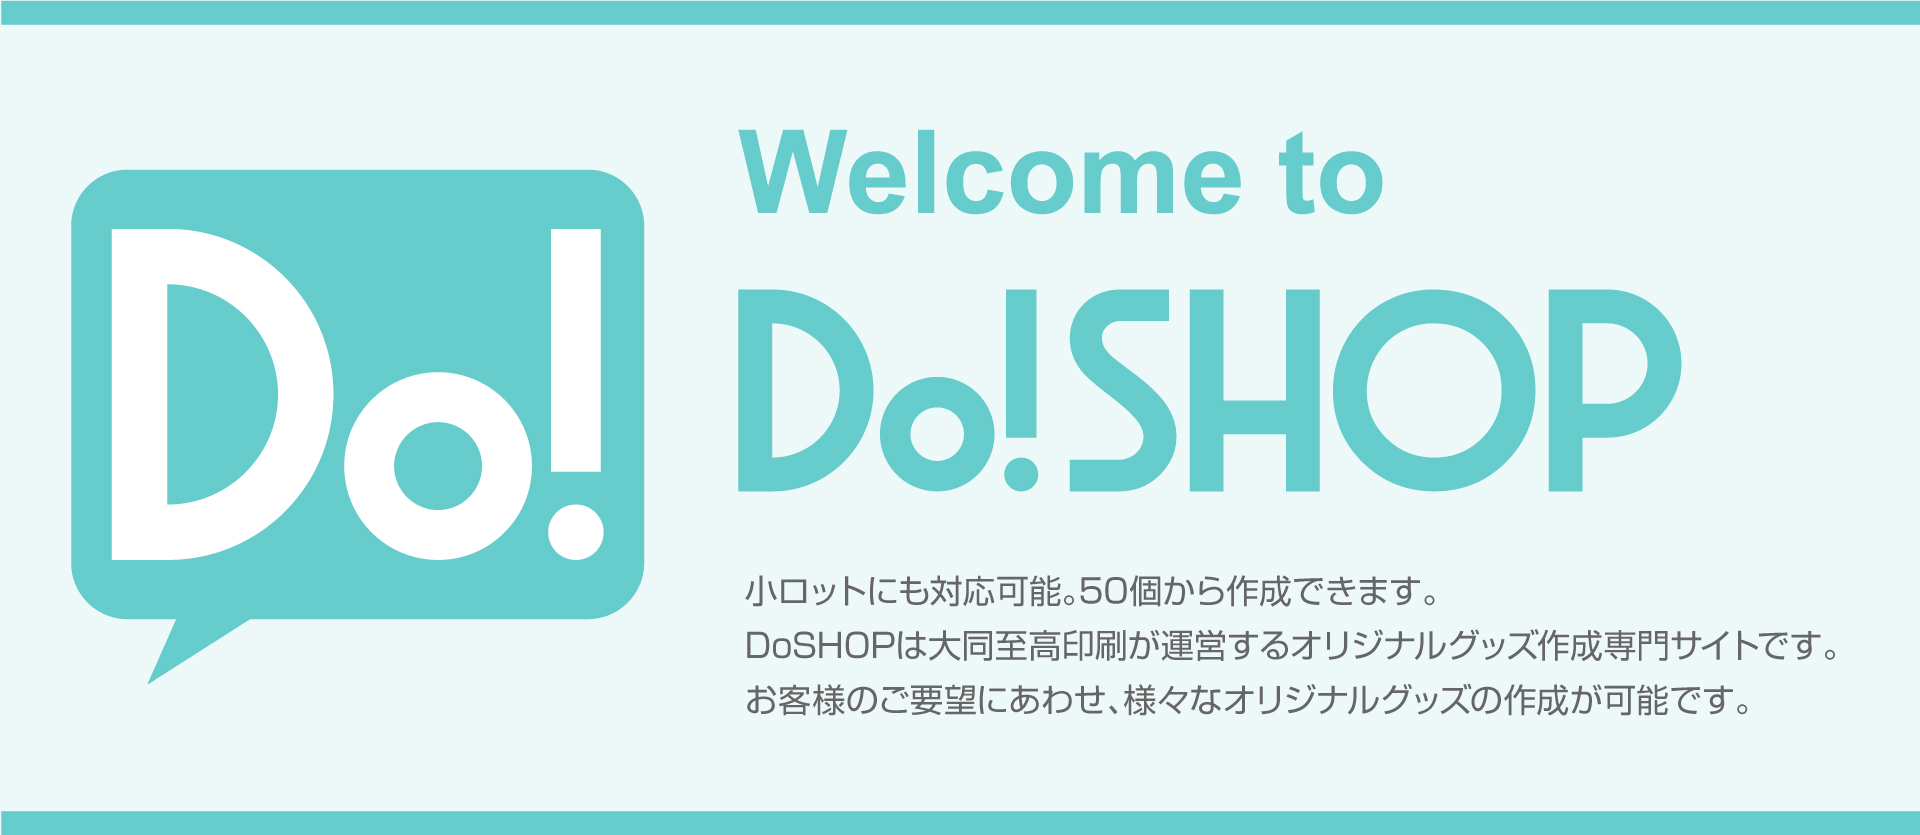 Welcome to DoSHOP 小ロットにも対応可能。50枚から作成できます。DoSHOPは大同至高が運営するオリジナルグッズ作成専門サイトです。
お客様のご要望にあわせ、様々なオリジナルグッズの作成が可能です。